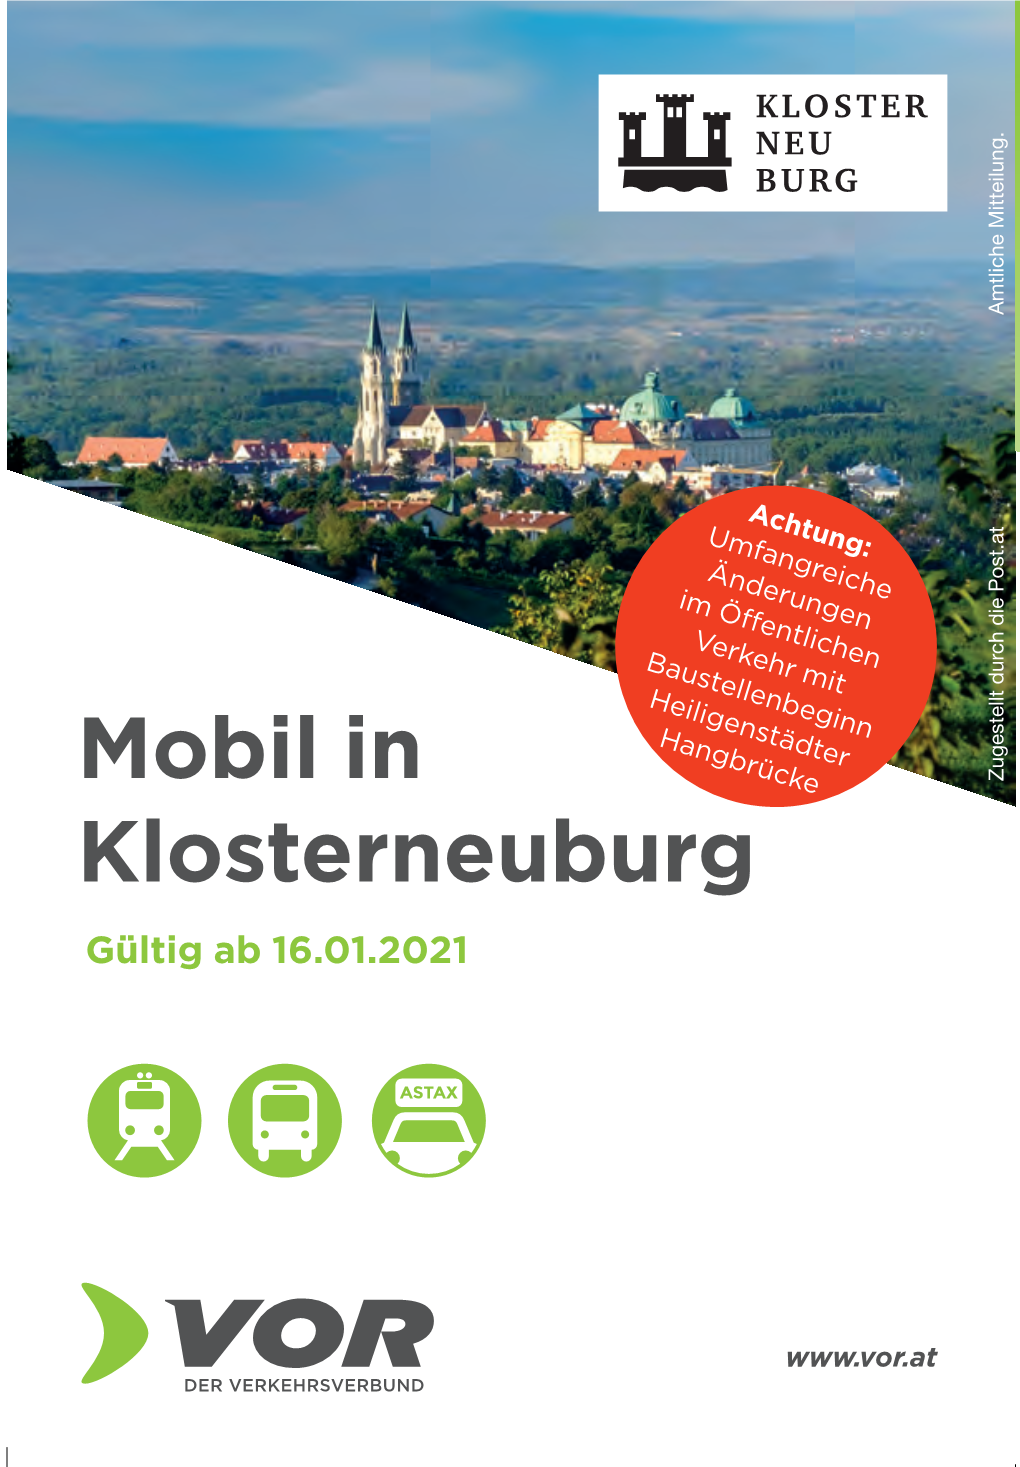 Mobil in Klosterneuburg